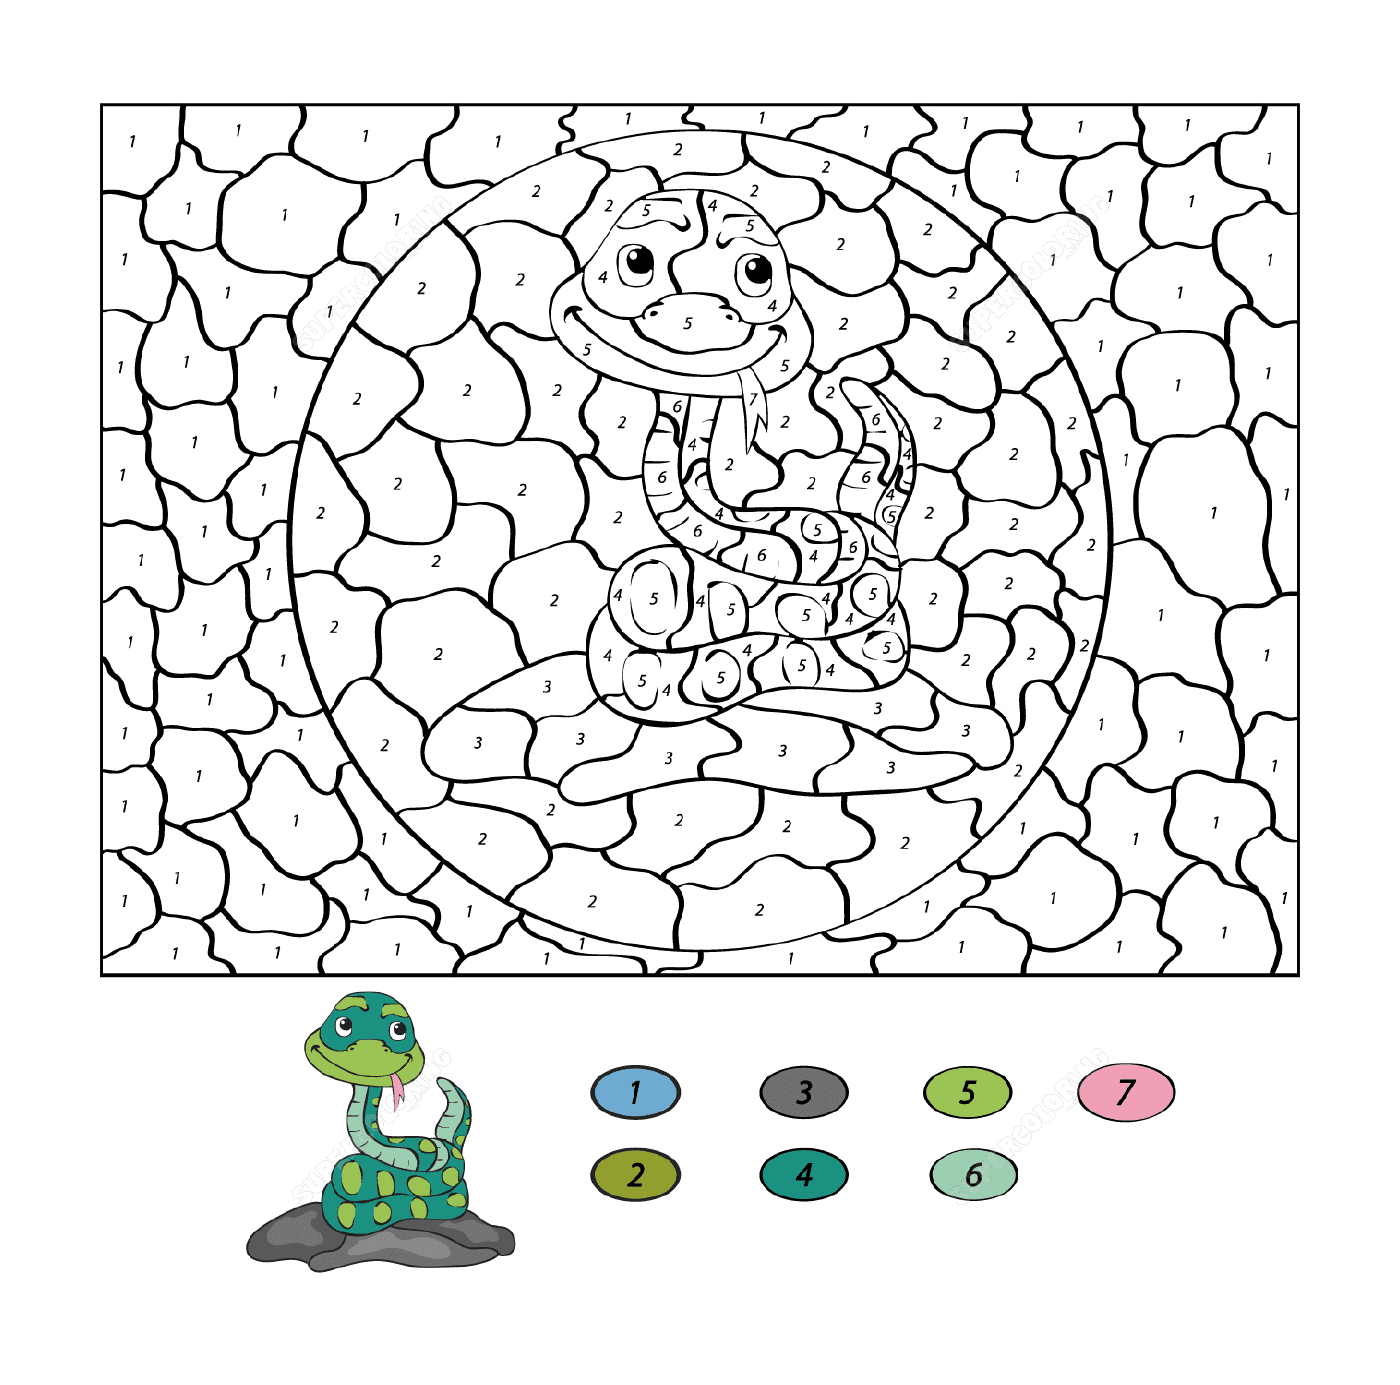  Una serpiente de dibujos animados con un dinosaurio 